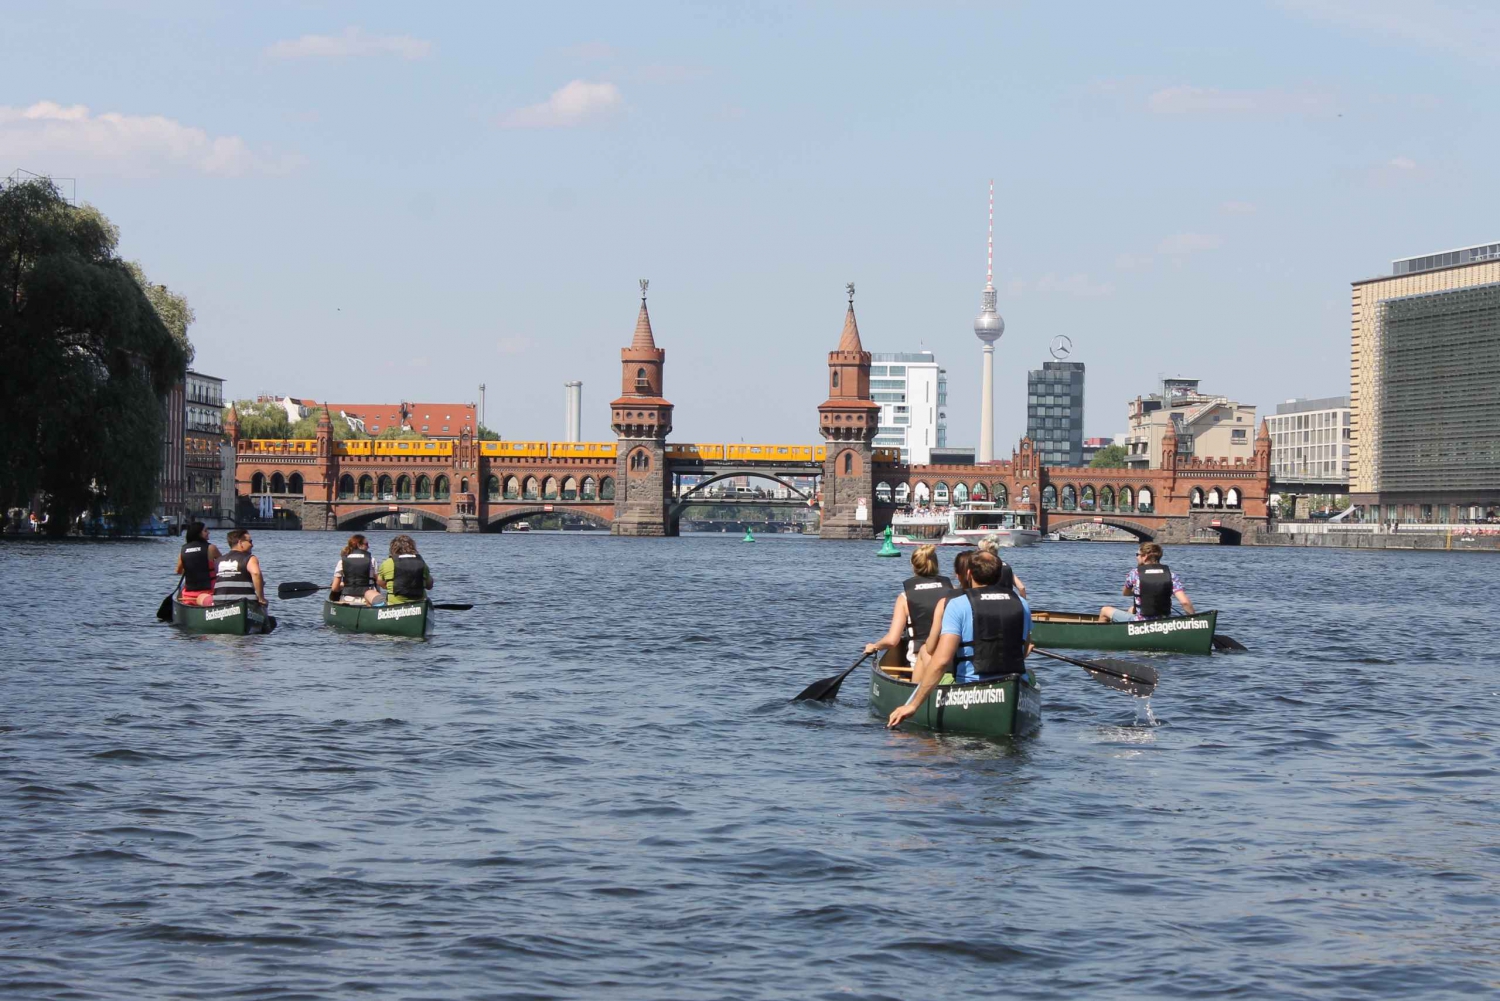 Berlin : Visite guidée en canoë sur la Spree